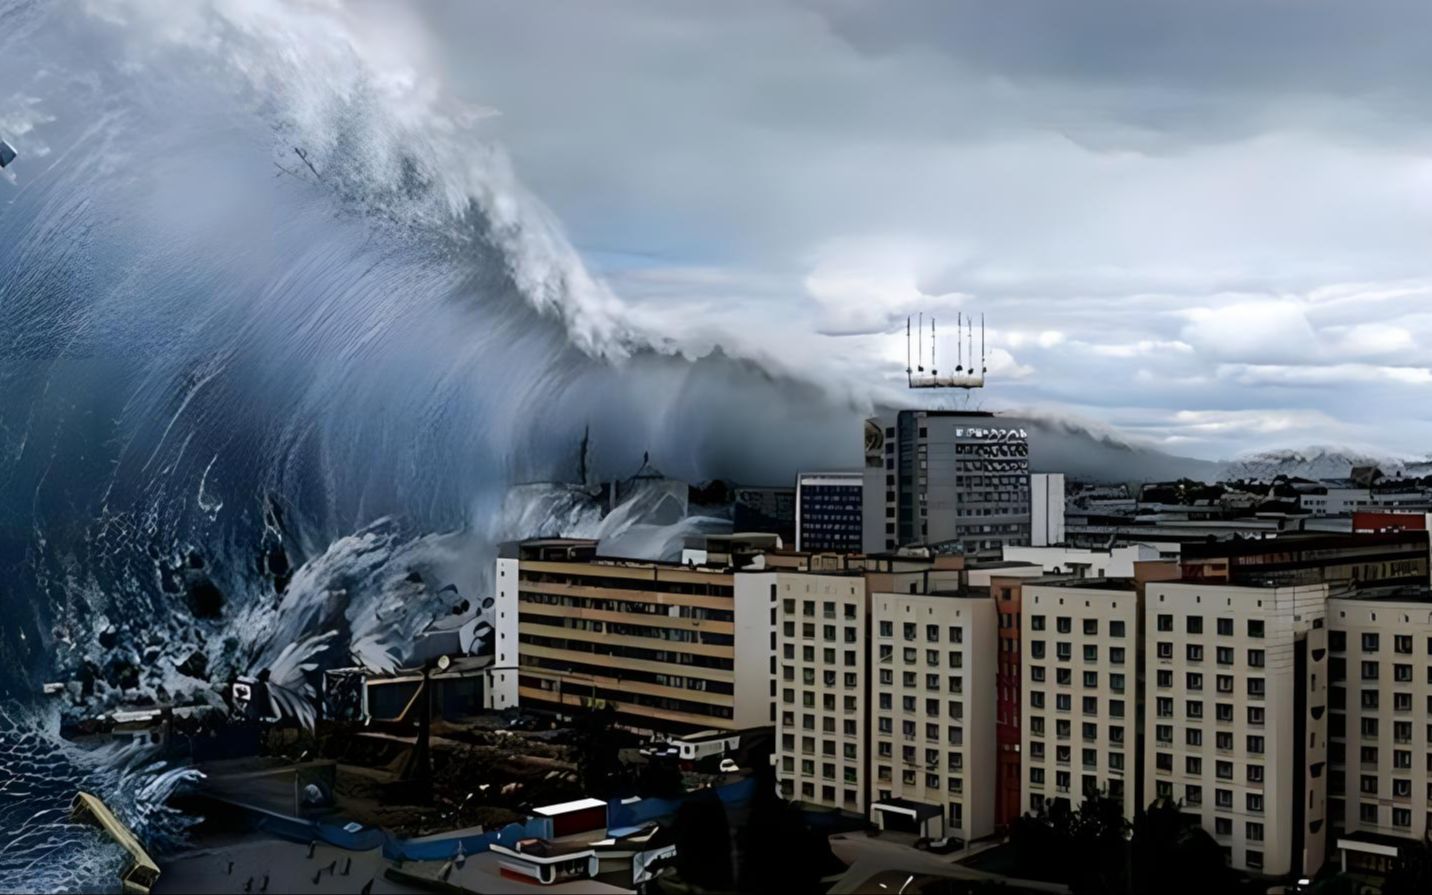 2011年日本海啸真实录像,海水瞬间淹没城市,福岛核电站发生爆炸